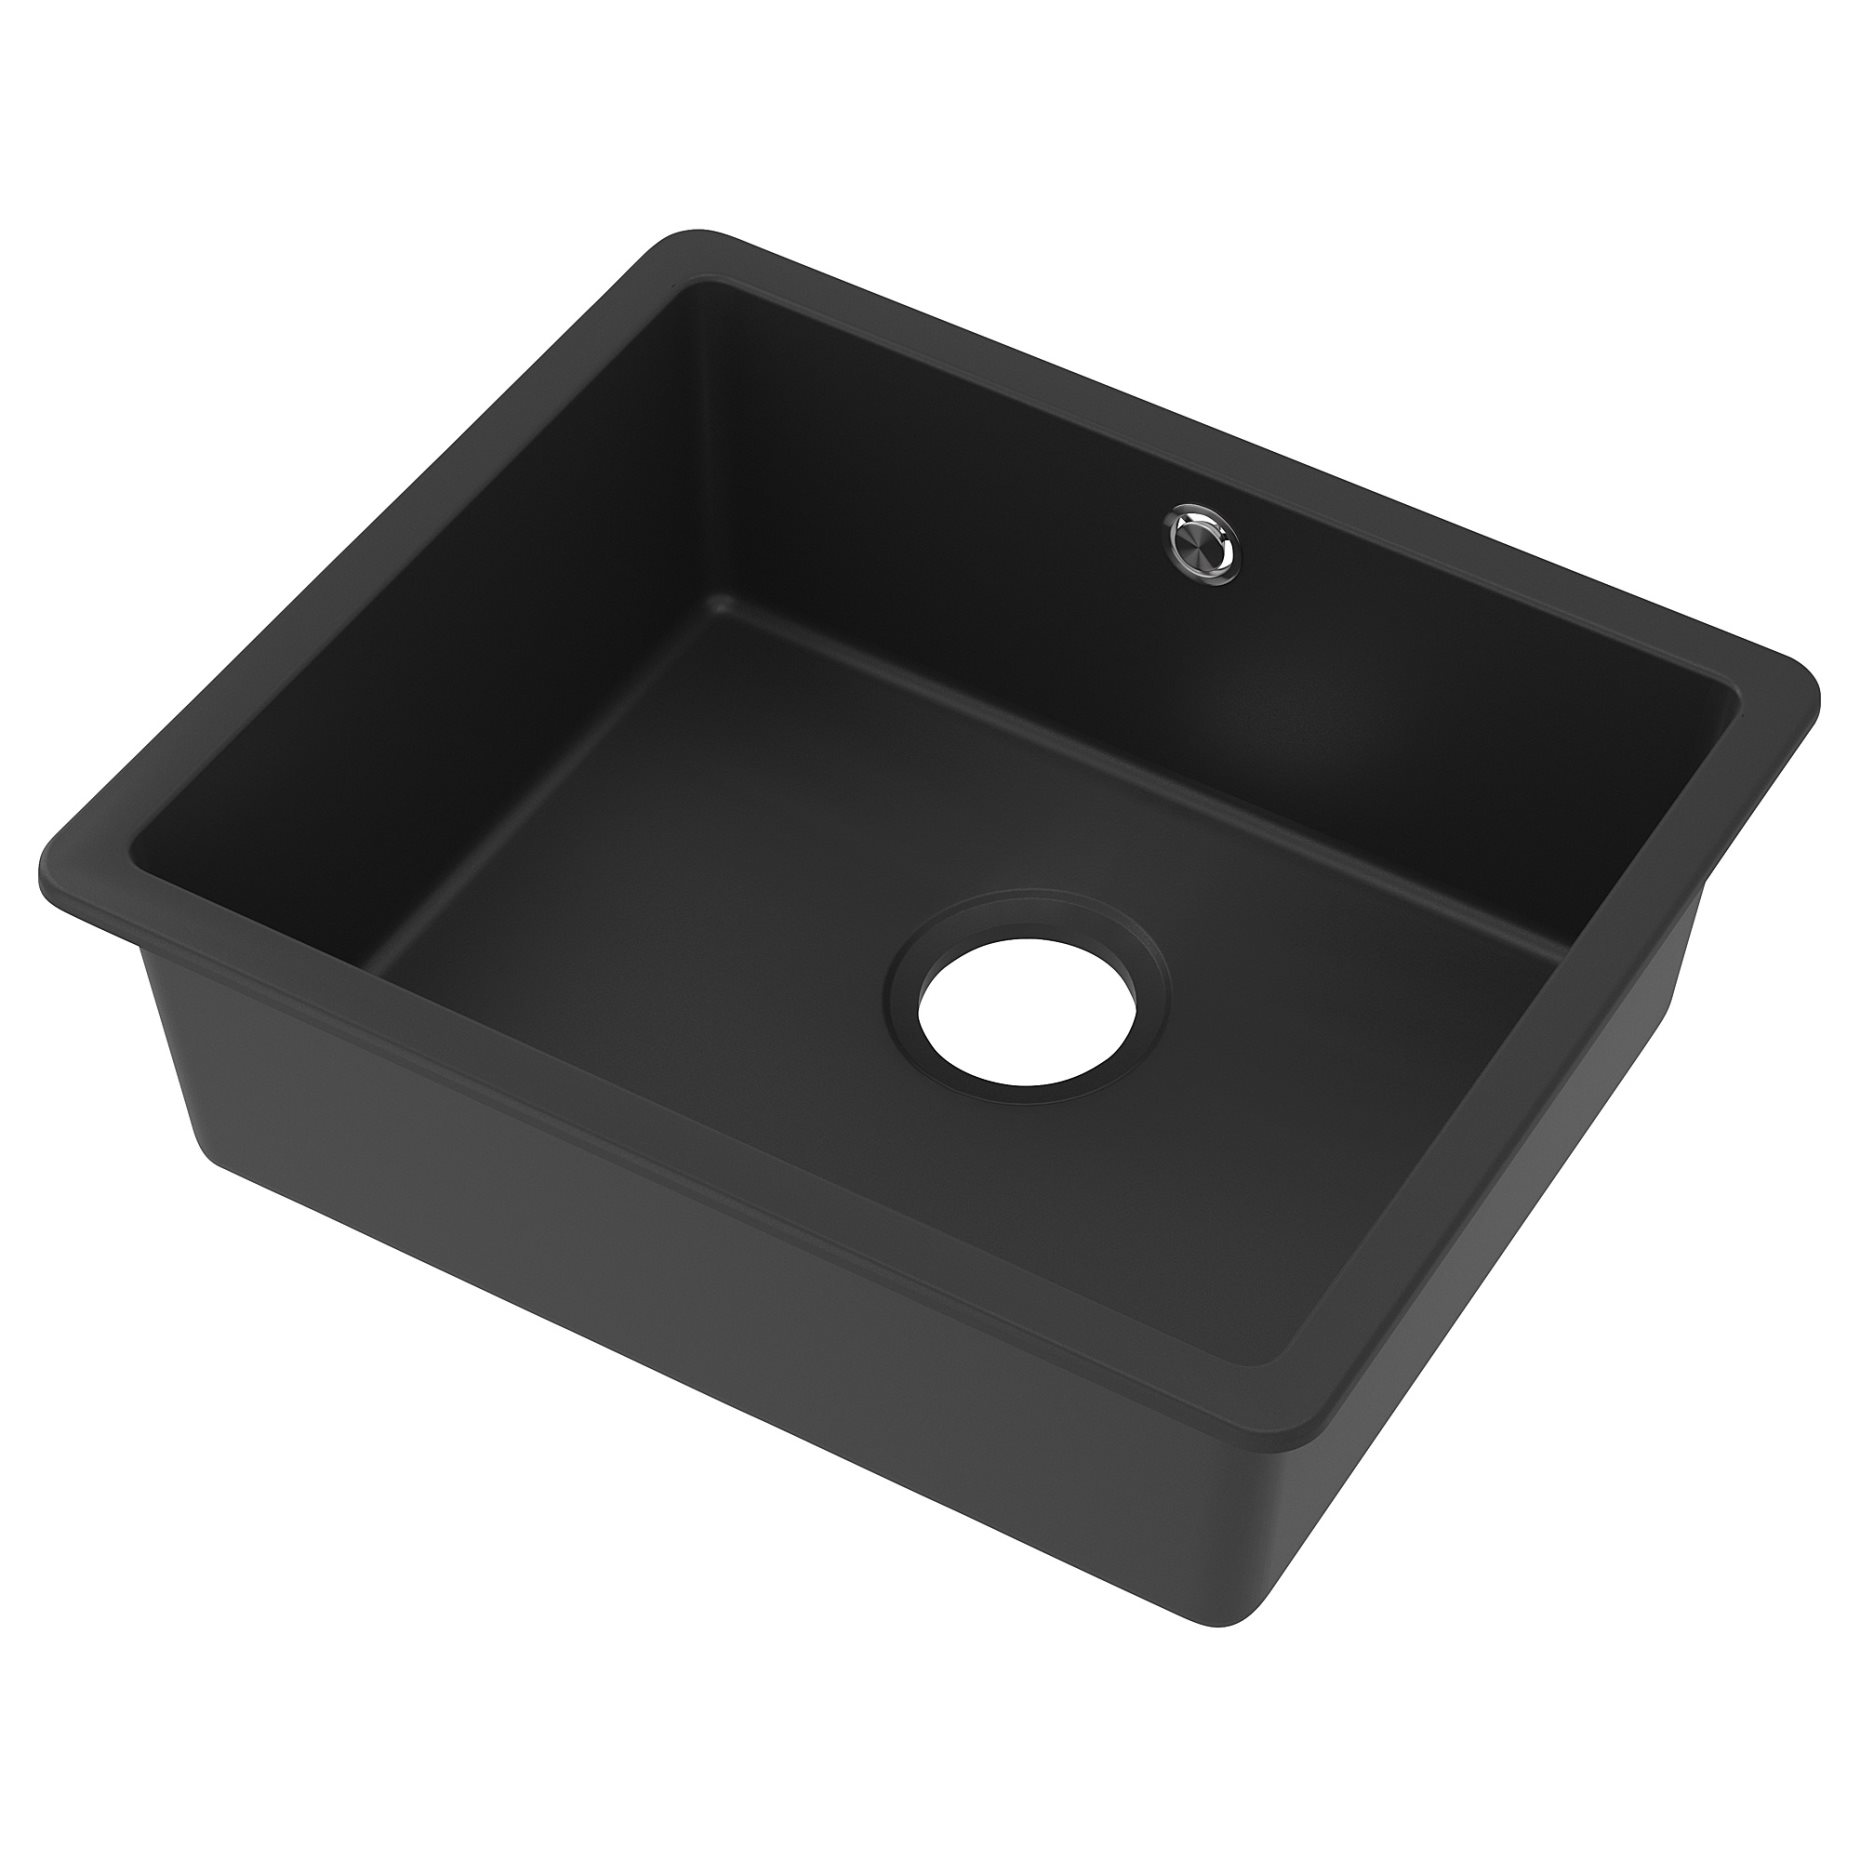 KILSVIKEN, inset sink 1 bowl, 56x46 cm, 404.449.34